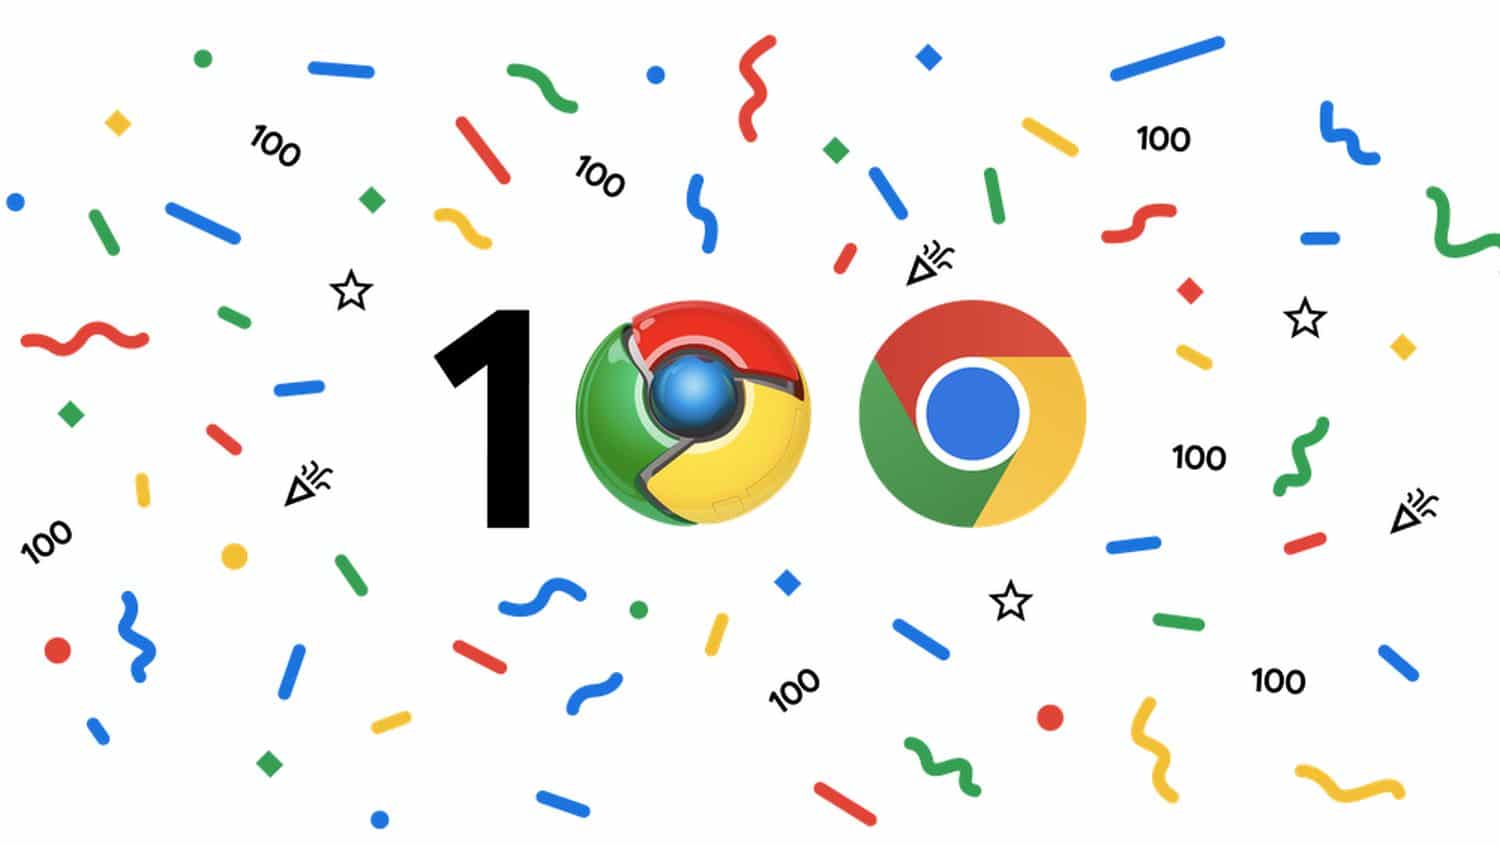 chrome 100 logo